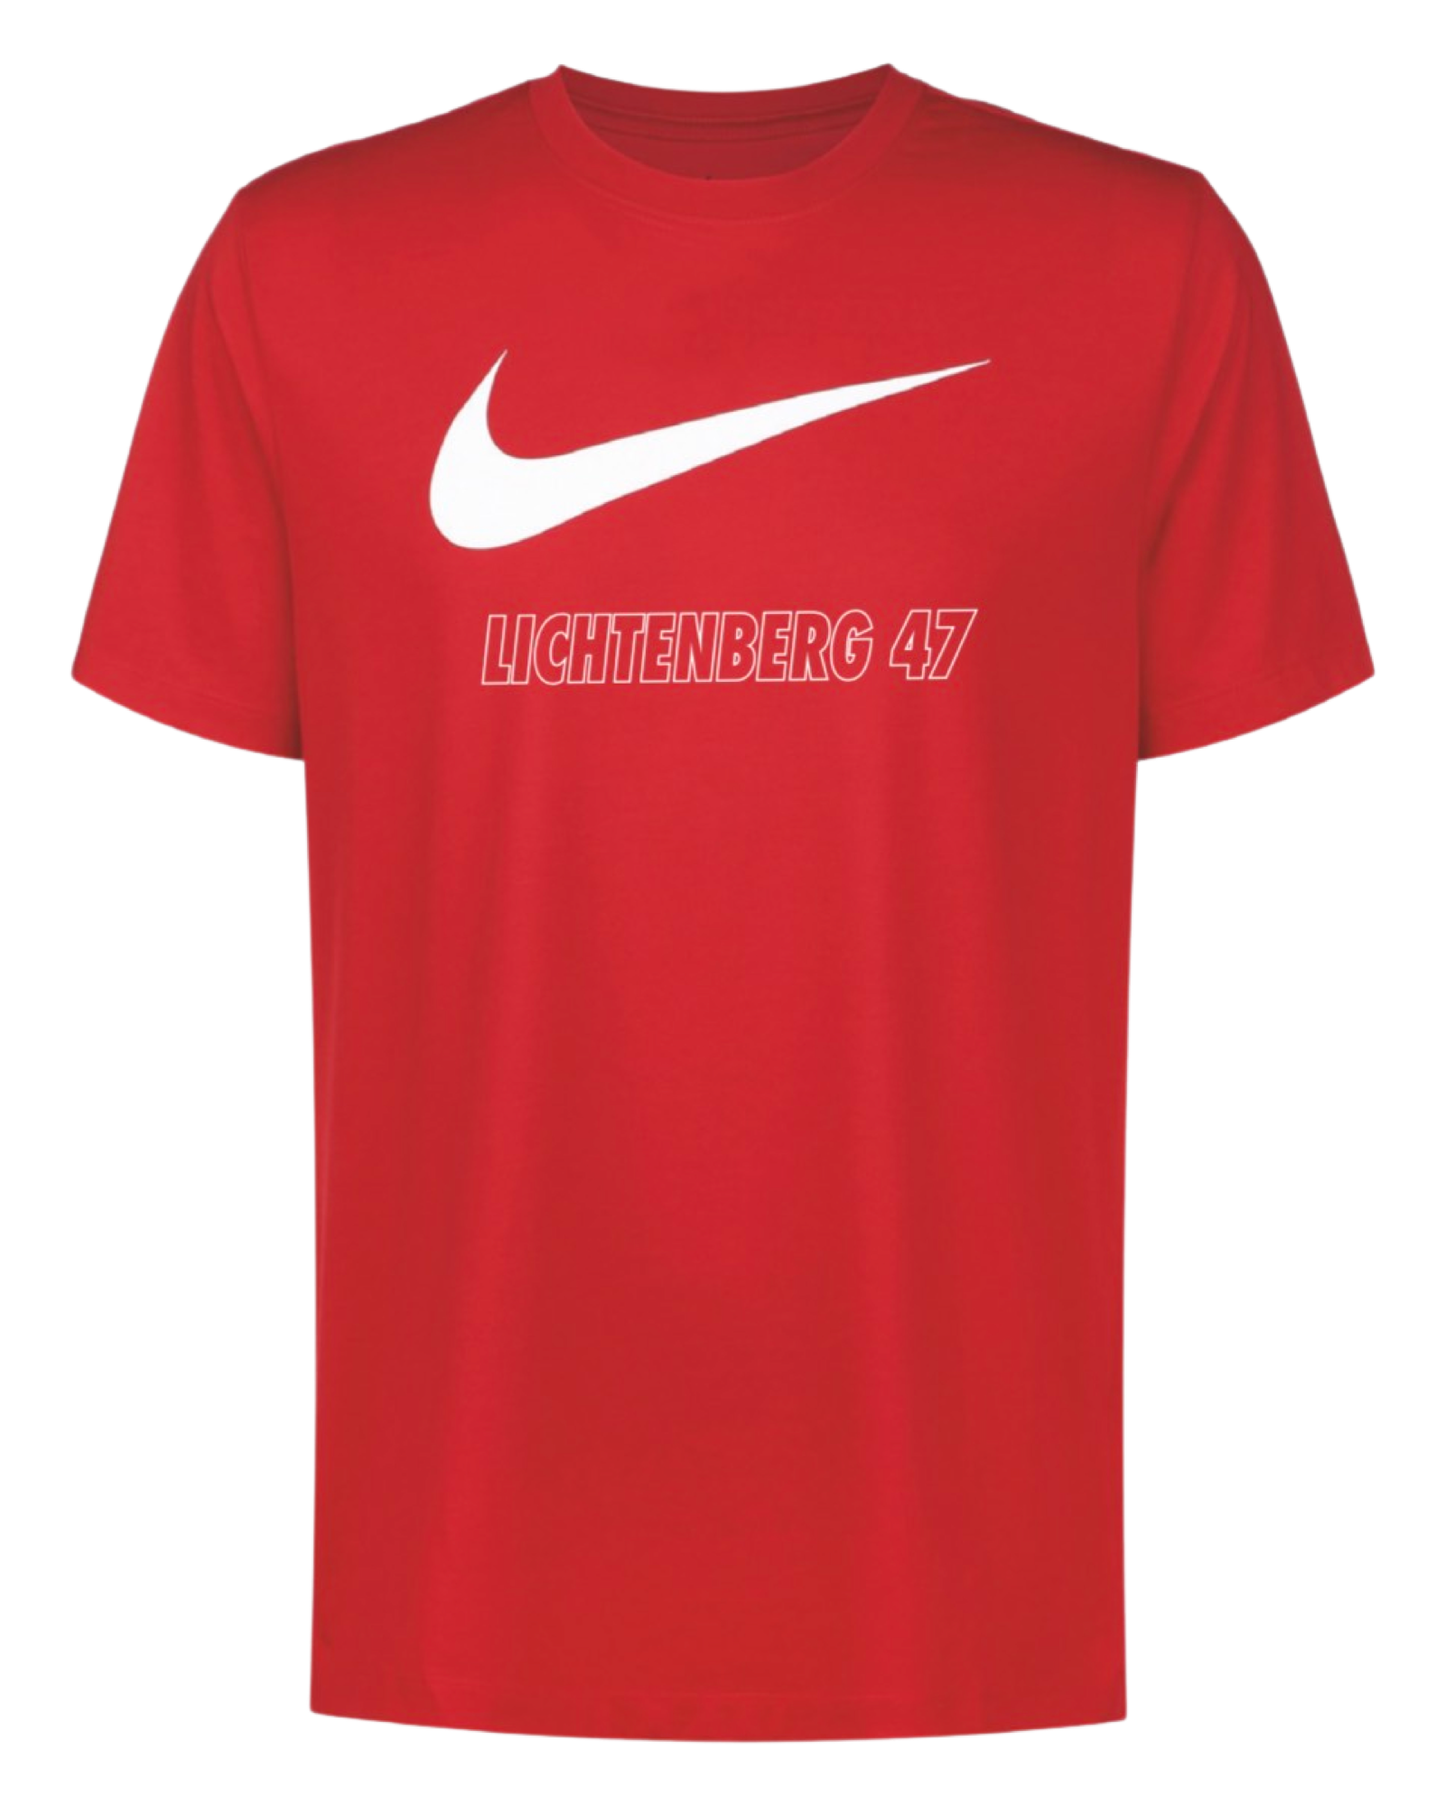 Nike 47er Kinder T-Shirt Rot